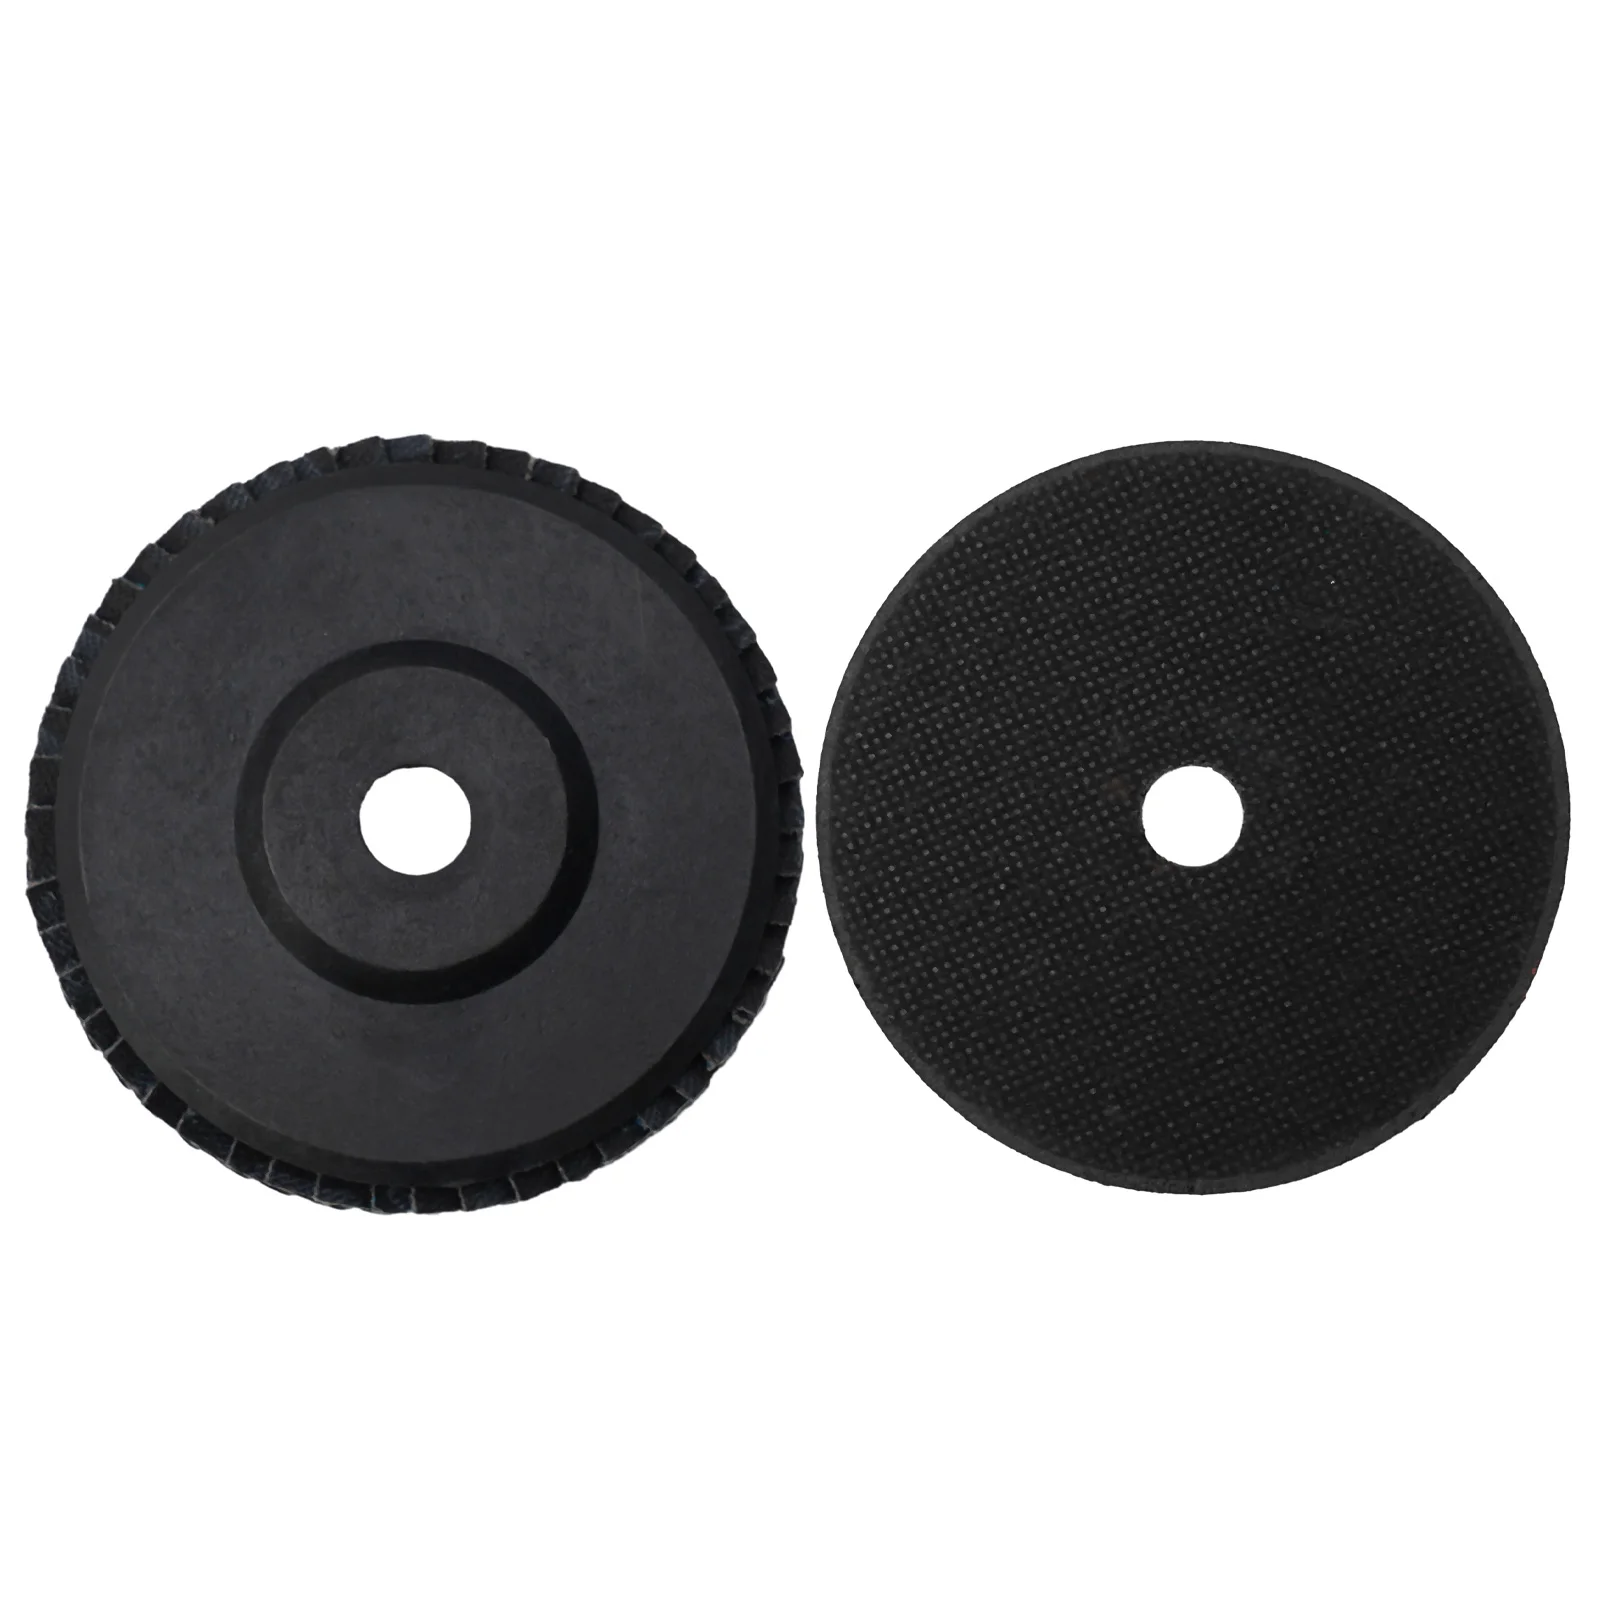 

15 шт. 75 мм дисковый полимерный пильный диск шлифовальный круг режущий диск для угловой шлифовальной машины Двойная сетка полимерный режущий диск шлифовальный круг